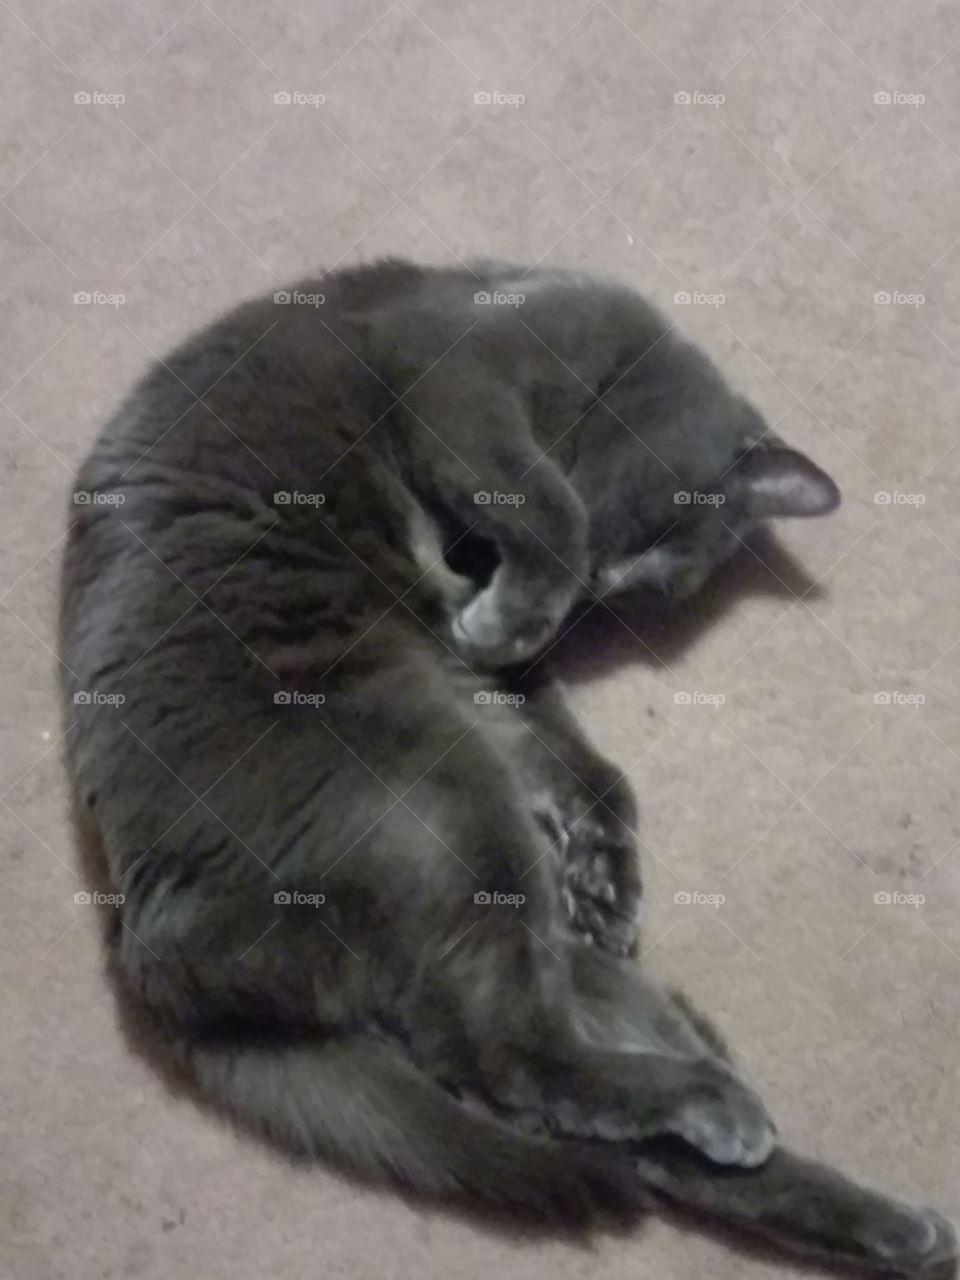 gray kitty still on the floor